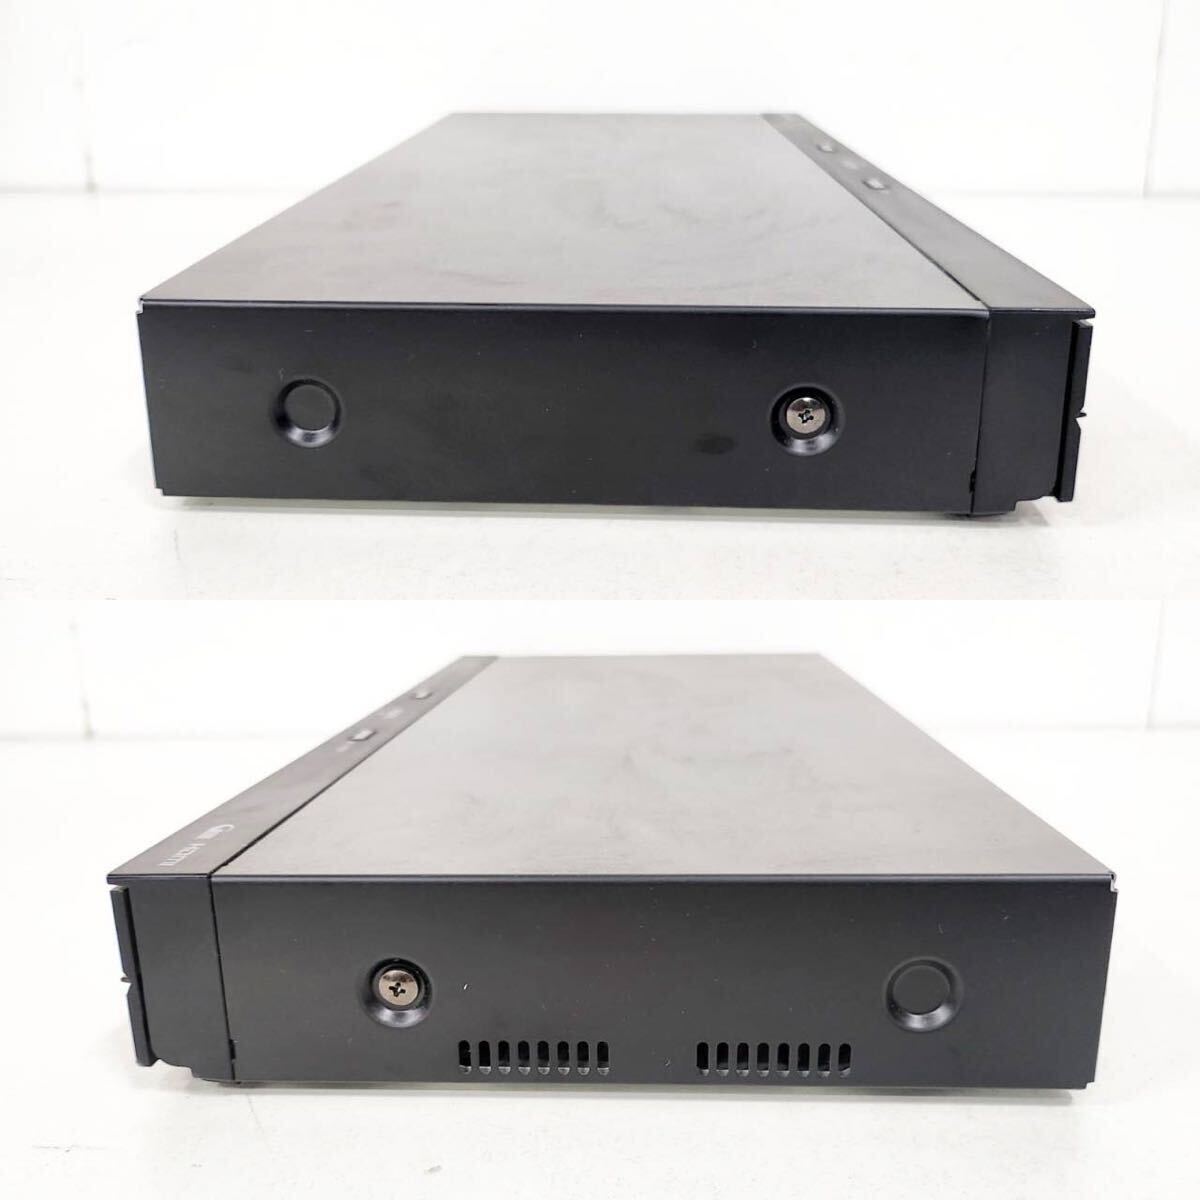 SHARP BD-NW1200/ Blue-ray магнитофон /1TB/2 номер комплект одновременно видеозапись возможно /B-CAS, дистанционный пульт,HDMI, электрический кабель приложен / установленный снаружи HDD соответствует / рабочее состояние подтверждено [NK5892]